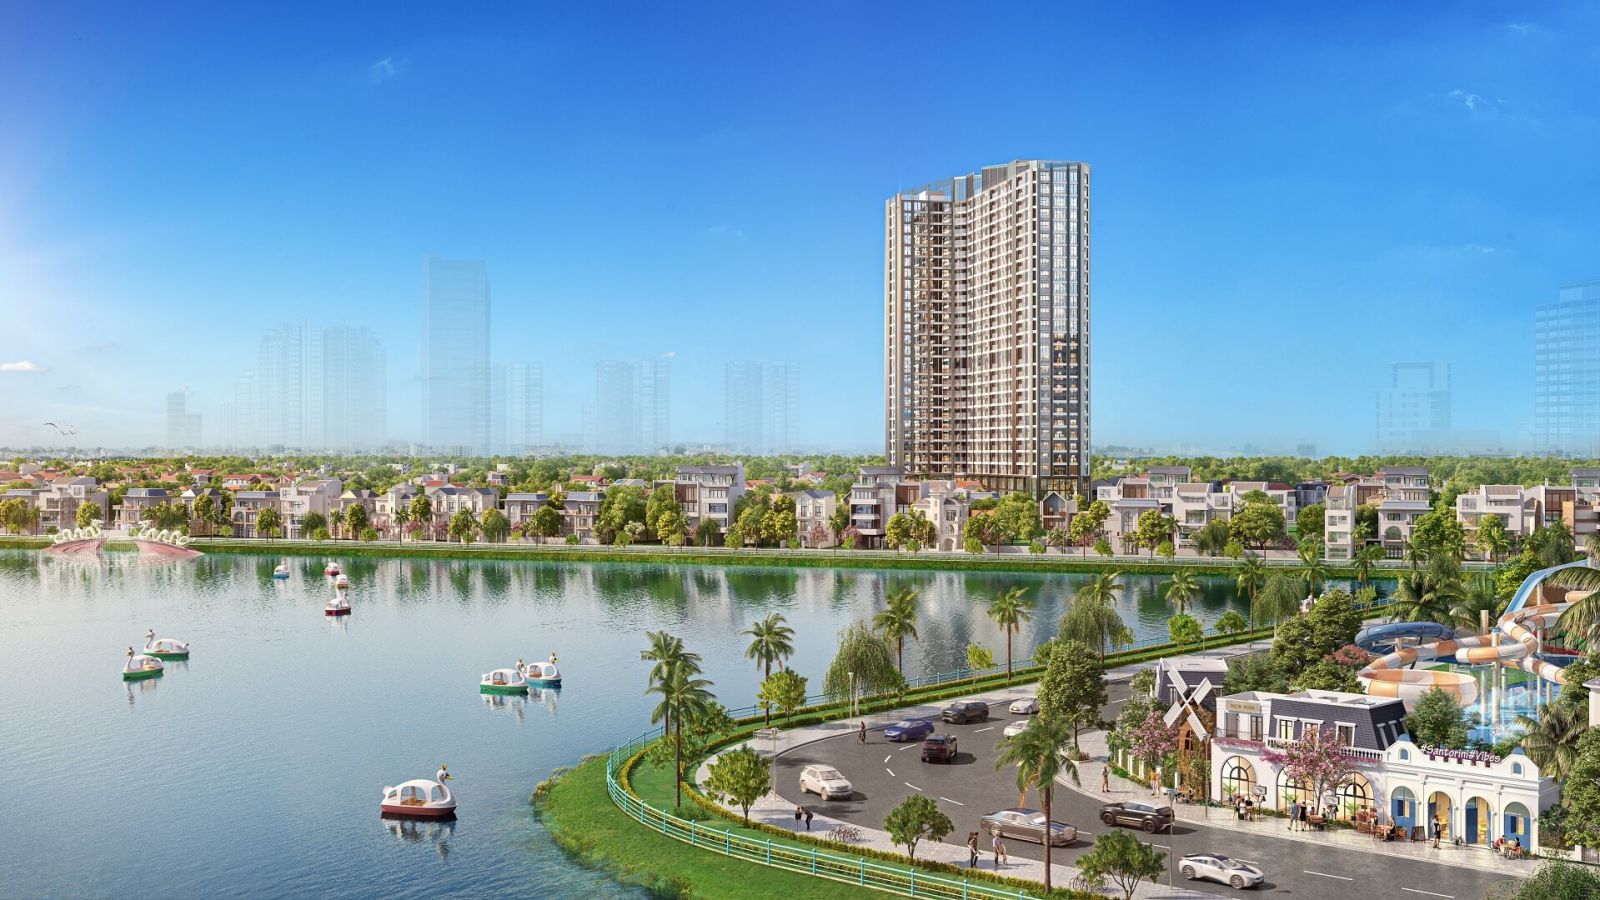 Trong bối cảnh quỹ đất nội đô Hà Nội ngày một hạn hẹp, căn hộ hạng sang Endless Skyline West Lake là một trong số ít dự án được triển khai thời gian này. 